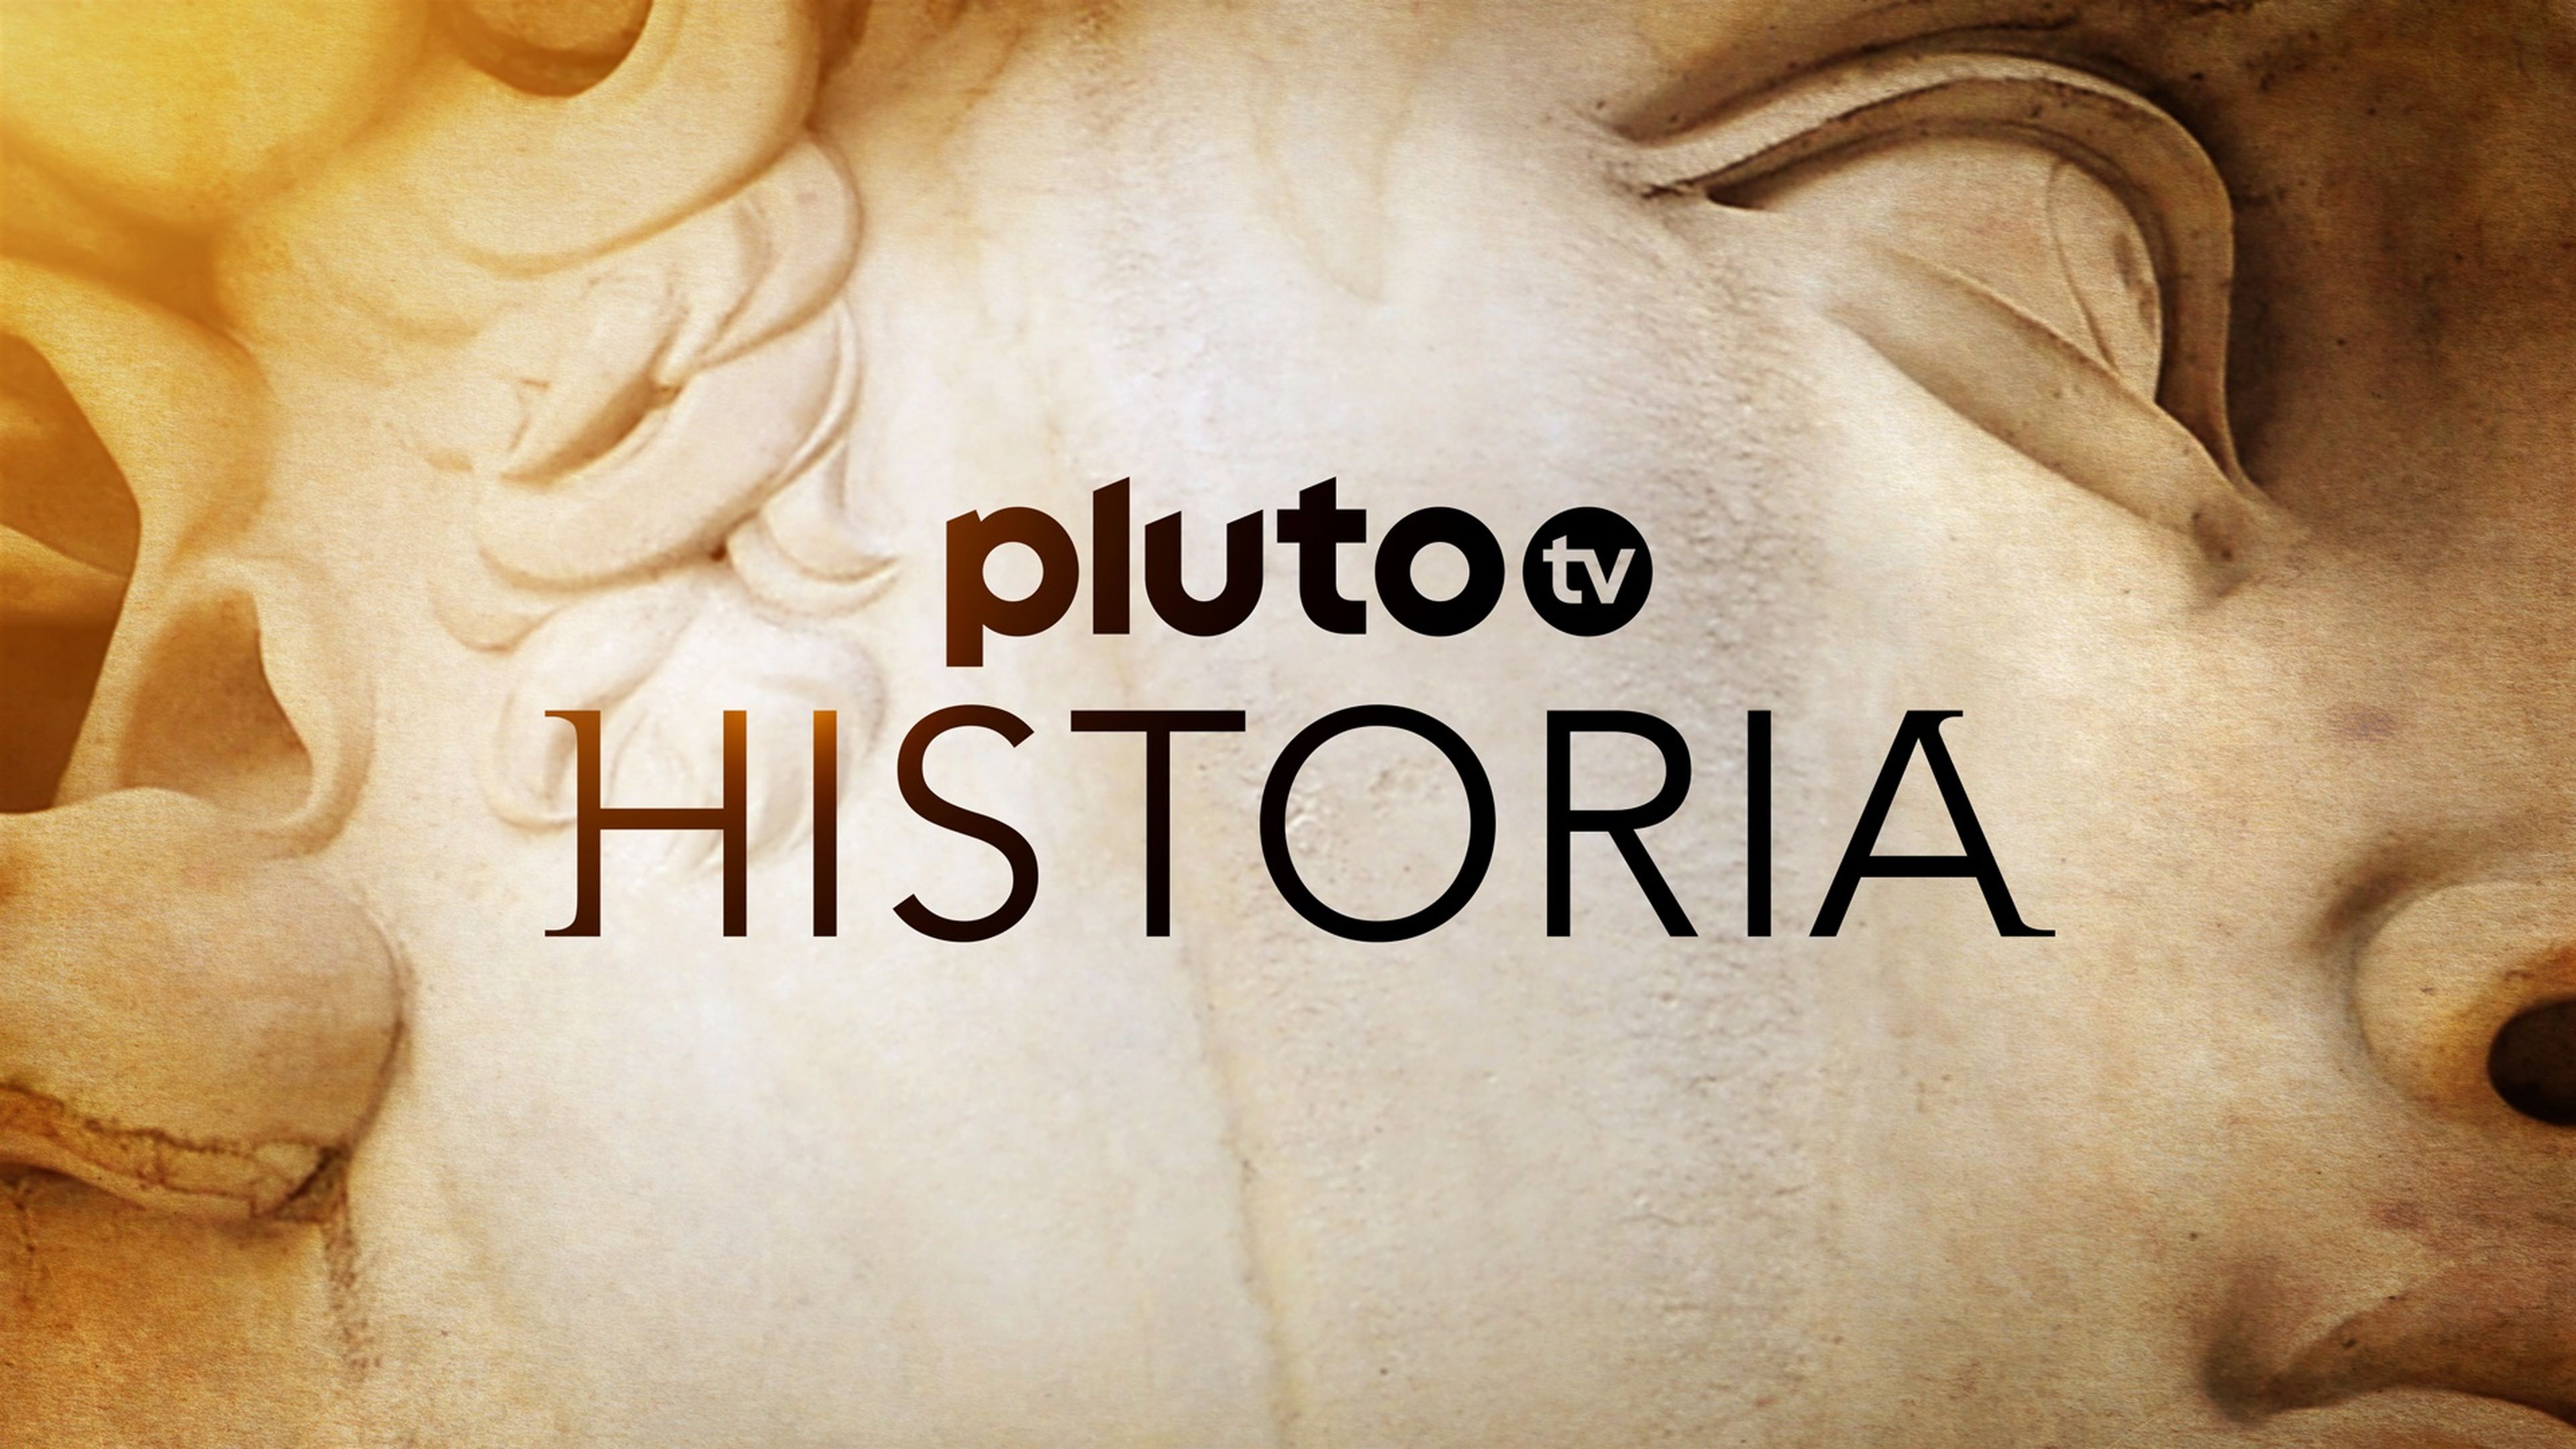 Pluto TV Historia